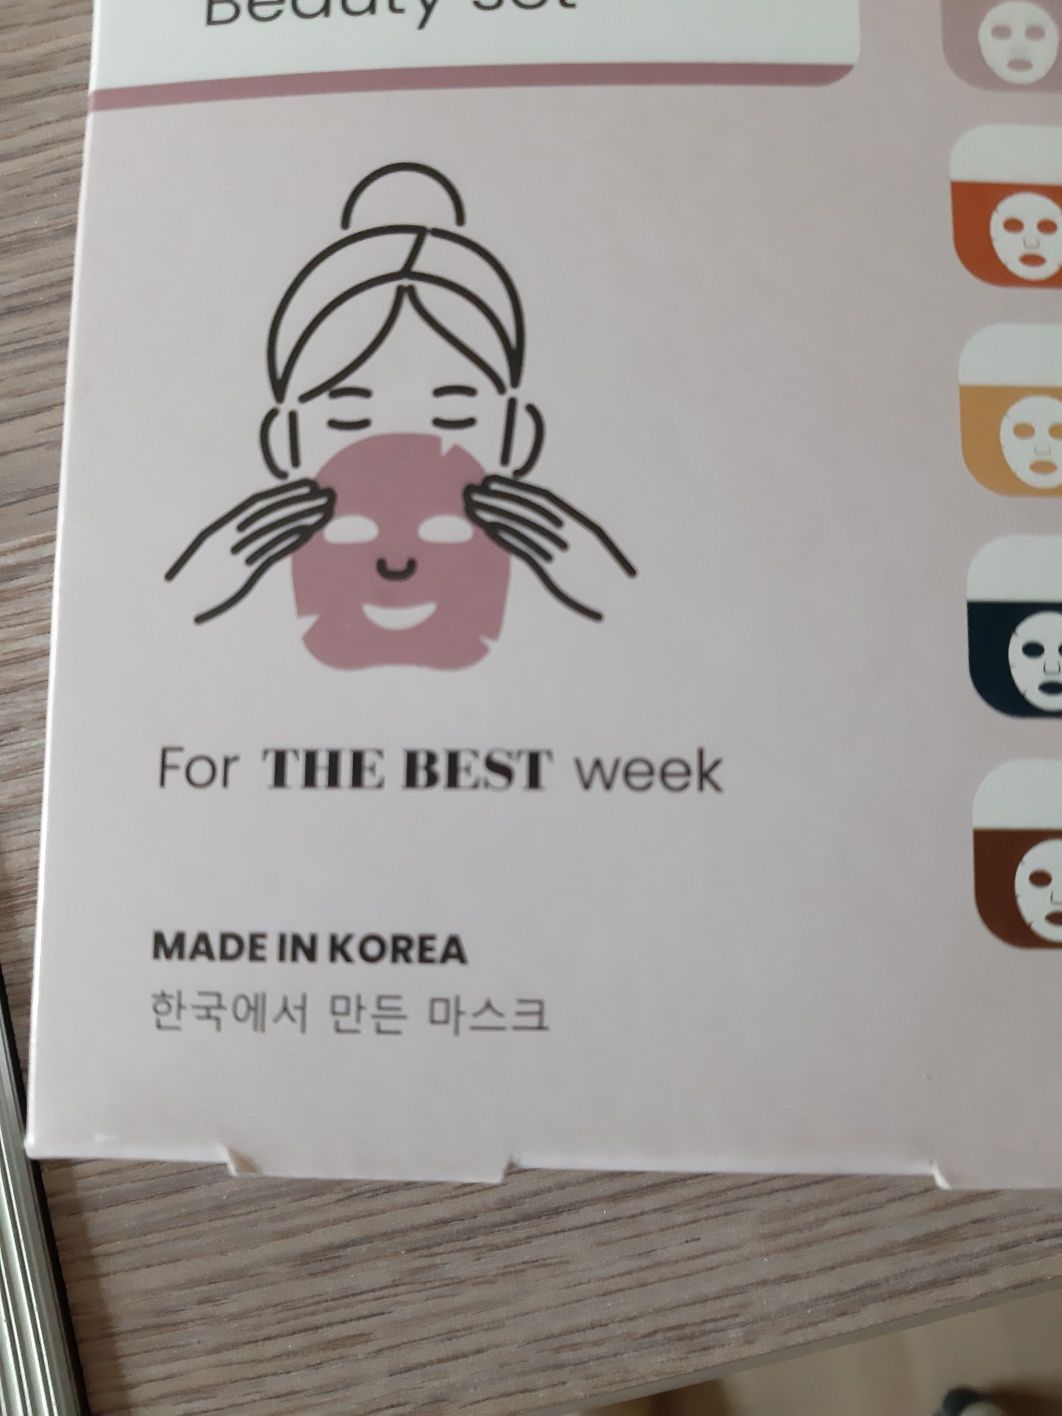 Maseczki Korea maski do twarzy kosmetyka 7 dni maseczki kolekcja tkmax